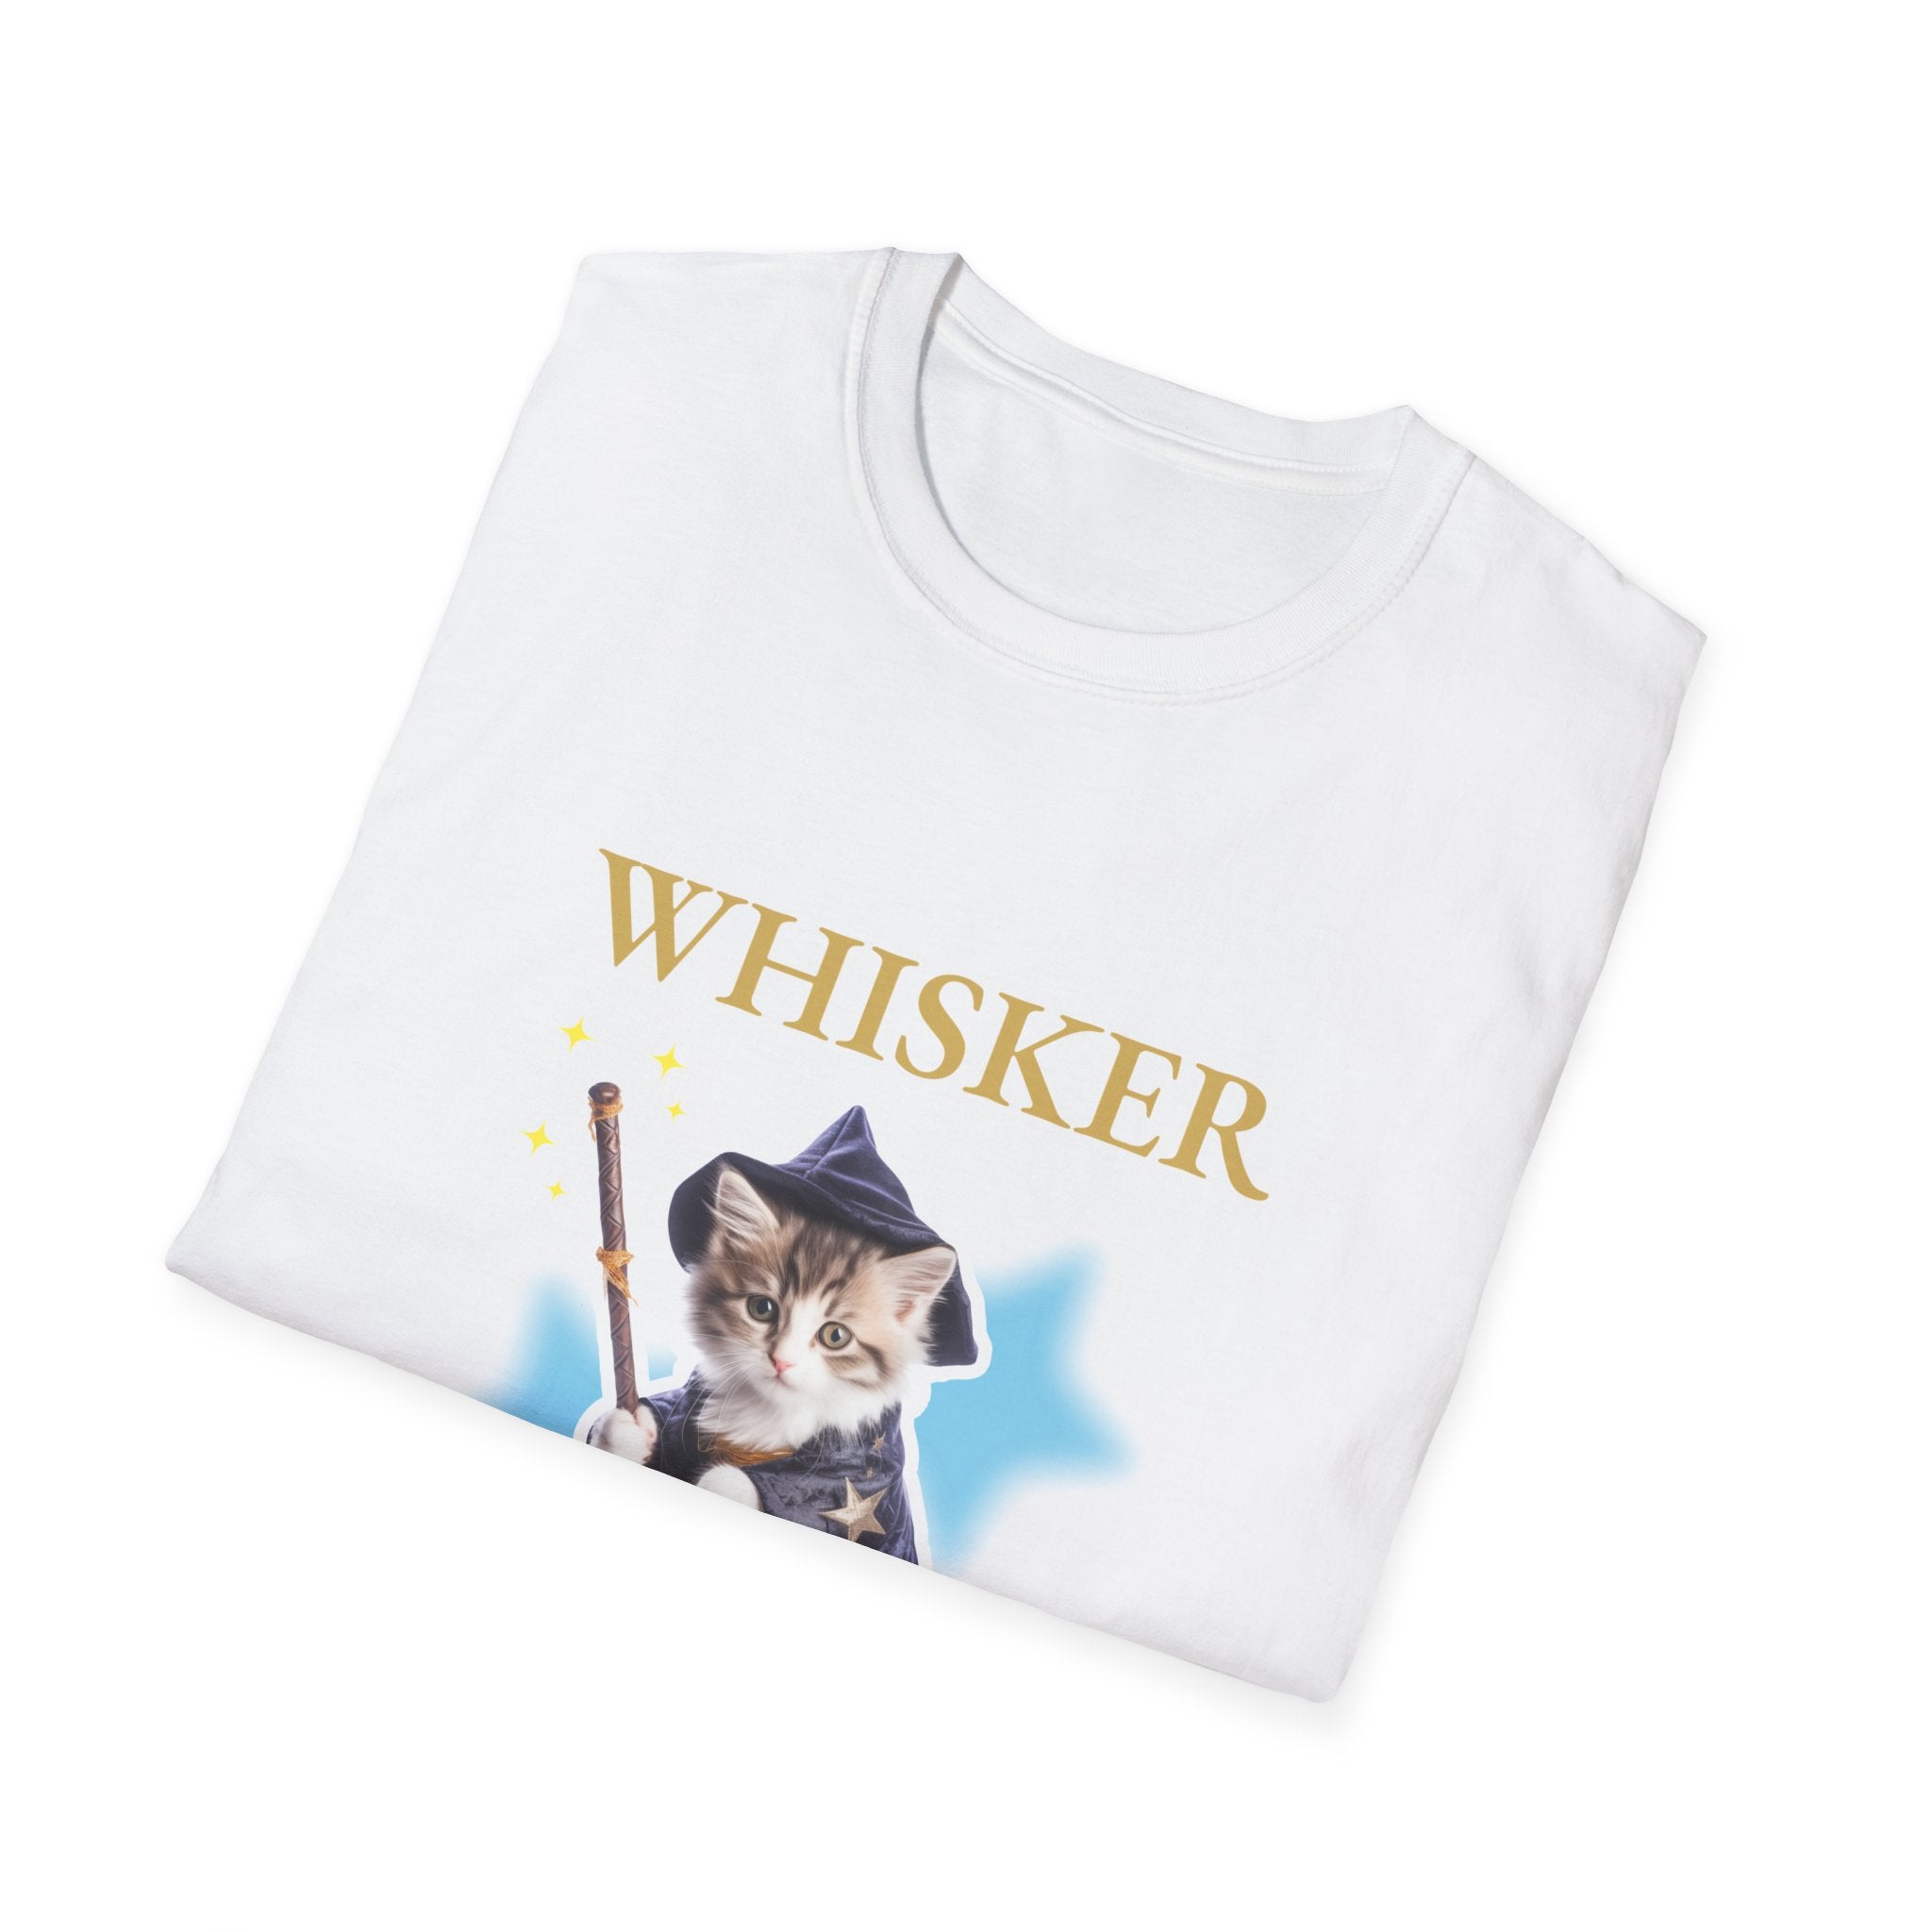 Whisker Wizard T-Shirt